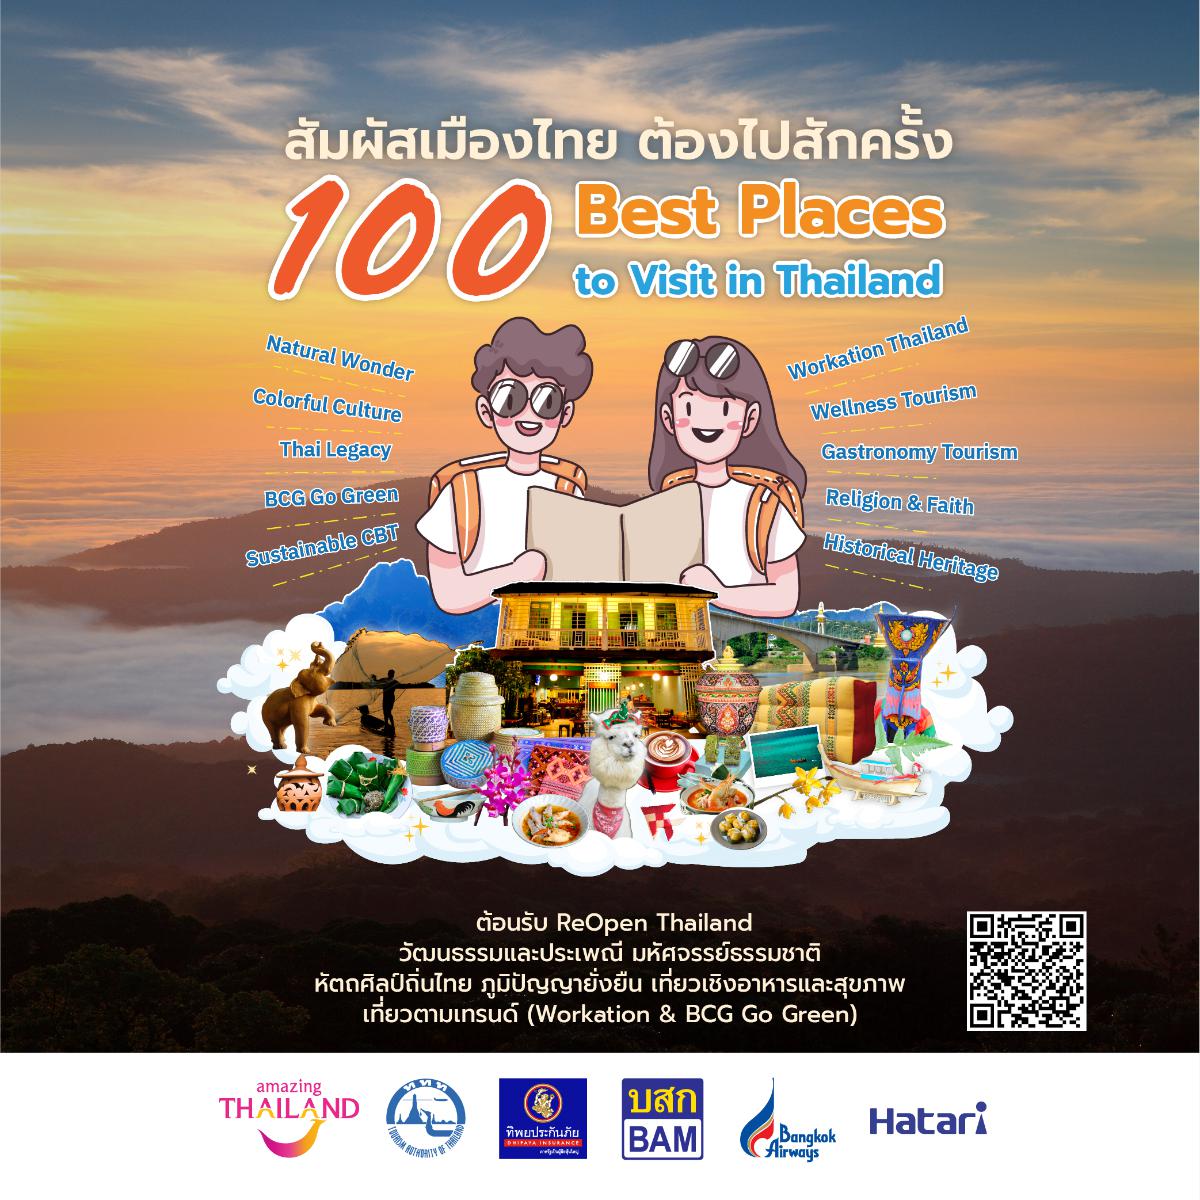 เปิดตัว E-Book สัมผัสเมืองไทย ต้องไปสักครั้ง